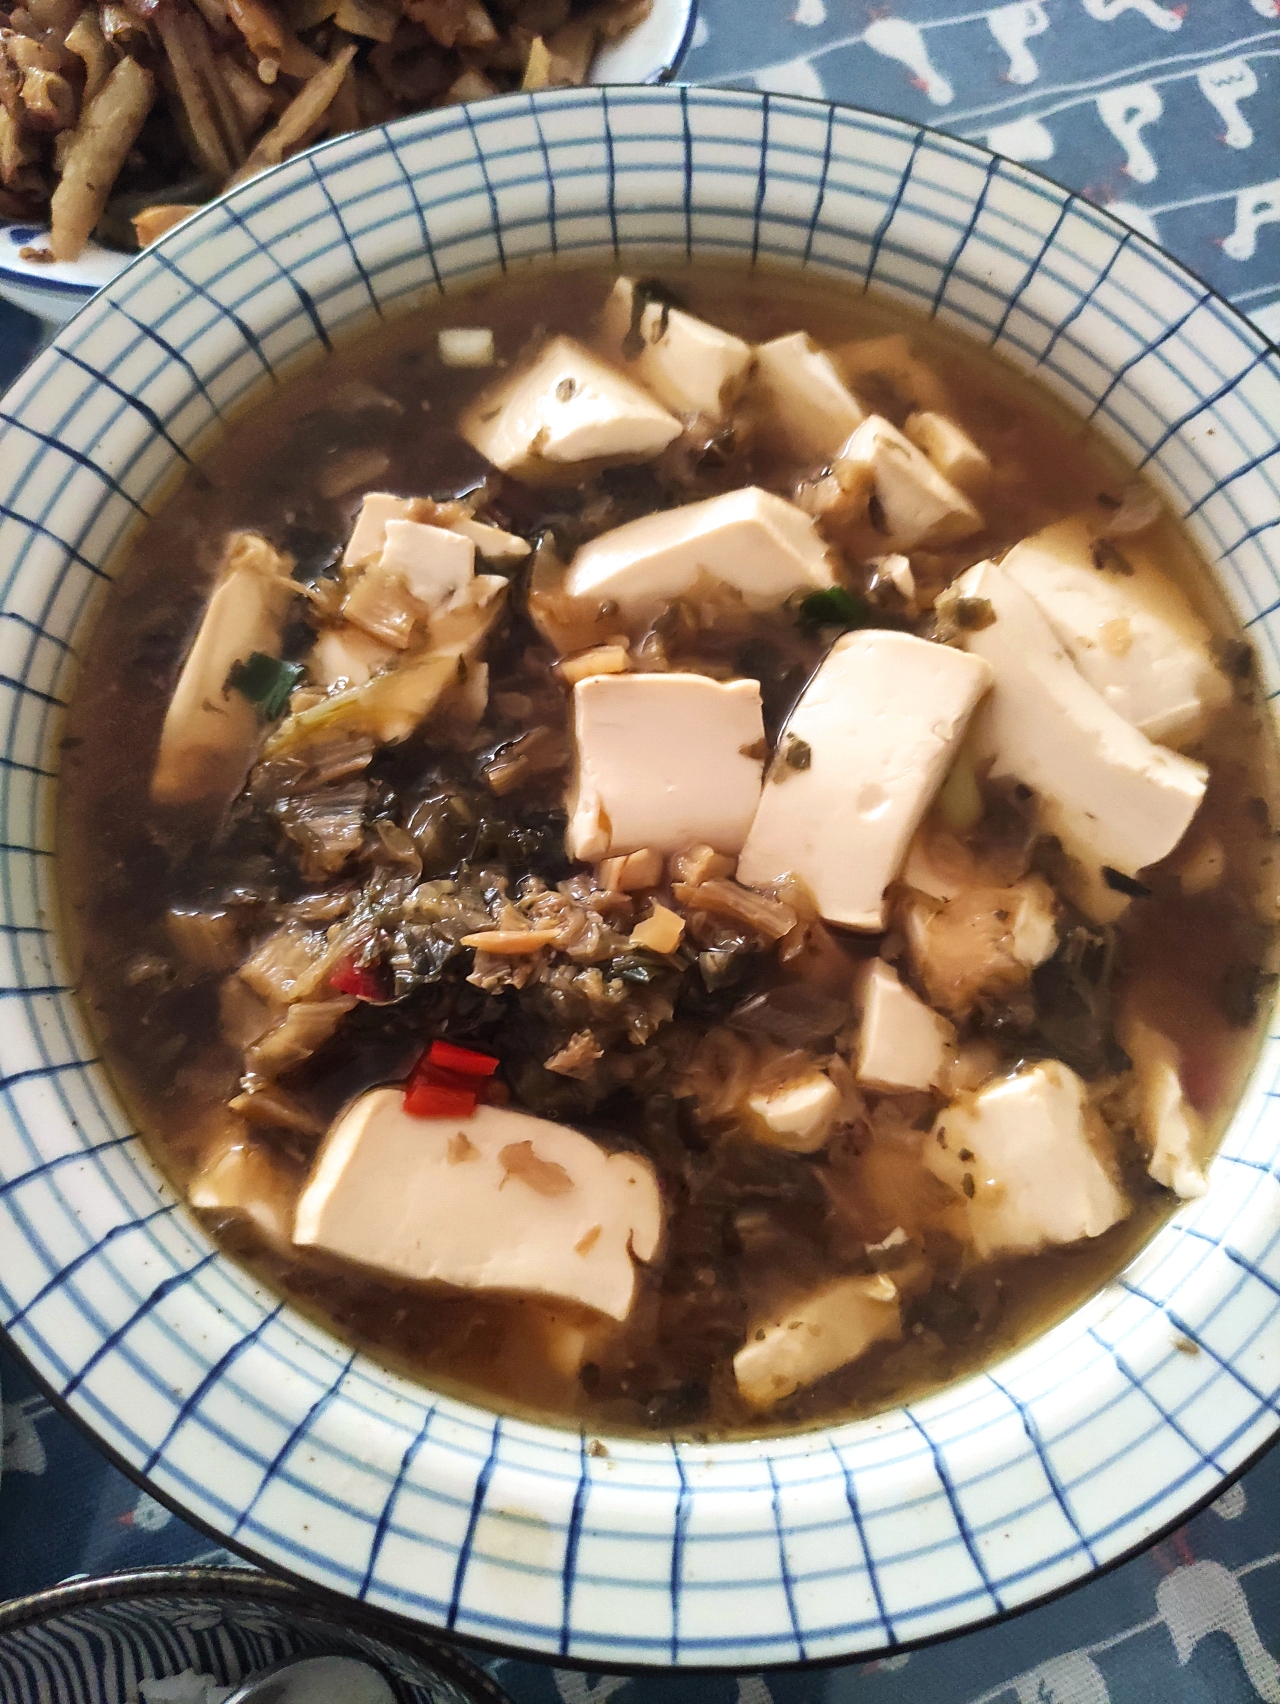 简单好喝的酸菜豆腐汤